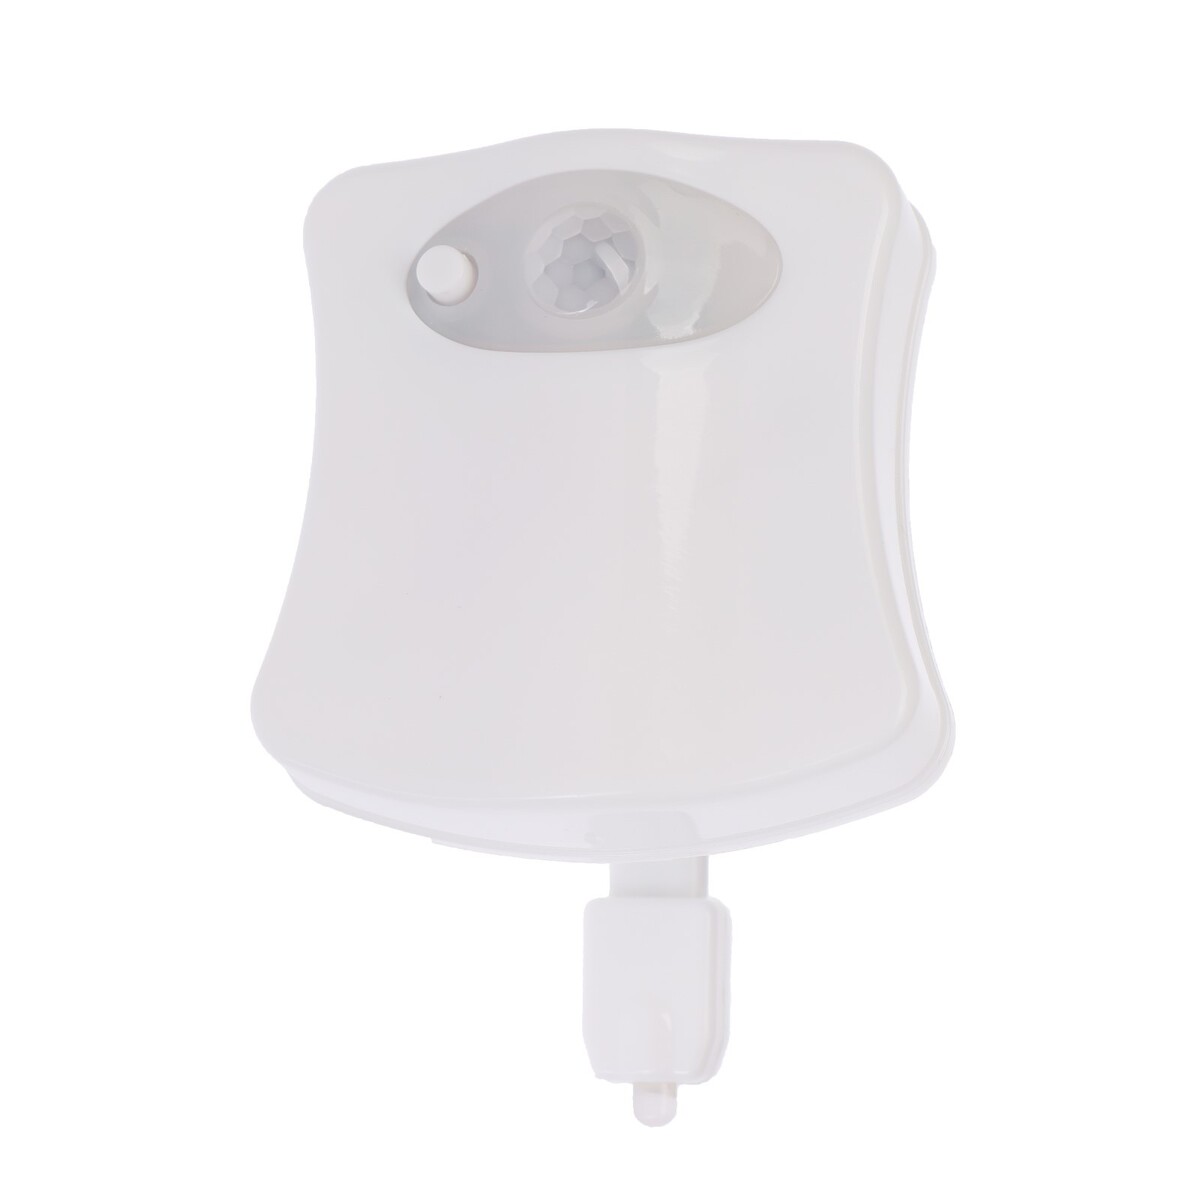 Светильник для туалета с датчиком движ., rgb, 3 вт, ip68, от бат. 3*aaa, белый встраиваемый светильник для лестницы 1 5 вт 60 лм 6500к ip20 220 в белый свет